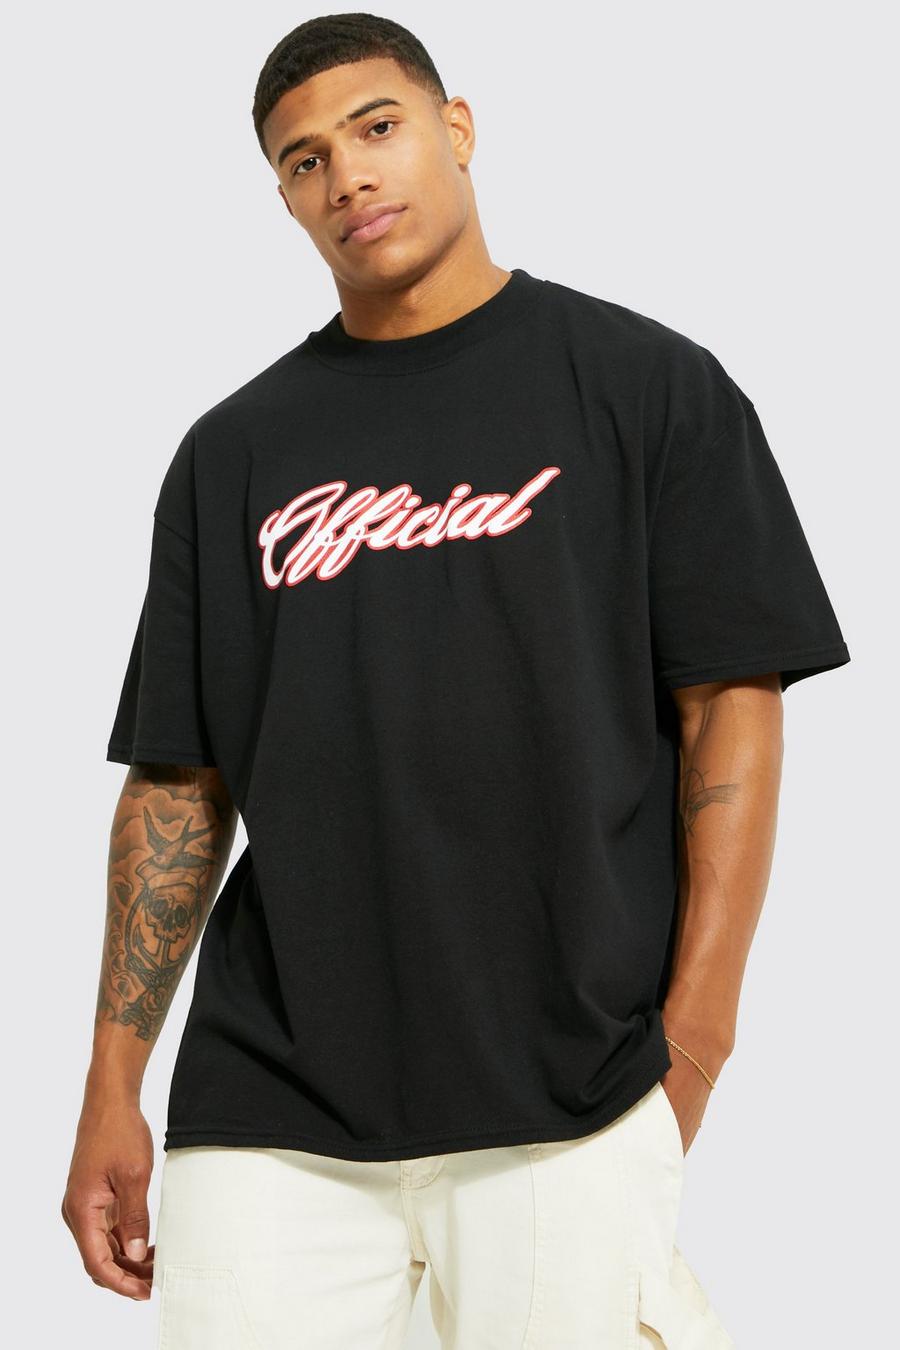 Black Oversized Offical Varsity Graphic T-shirt